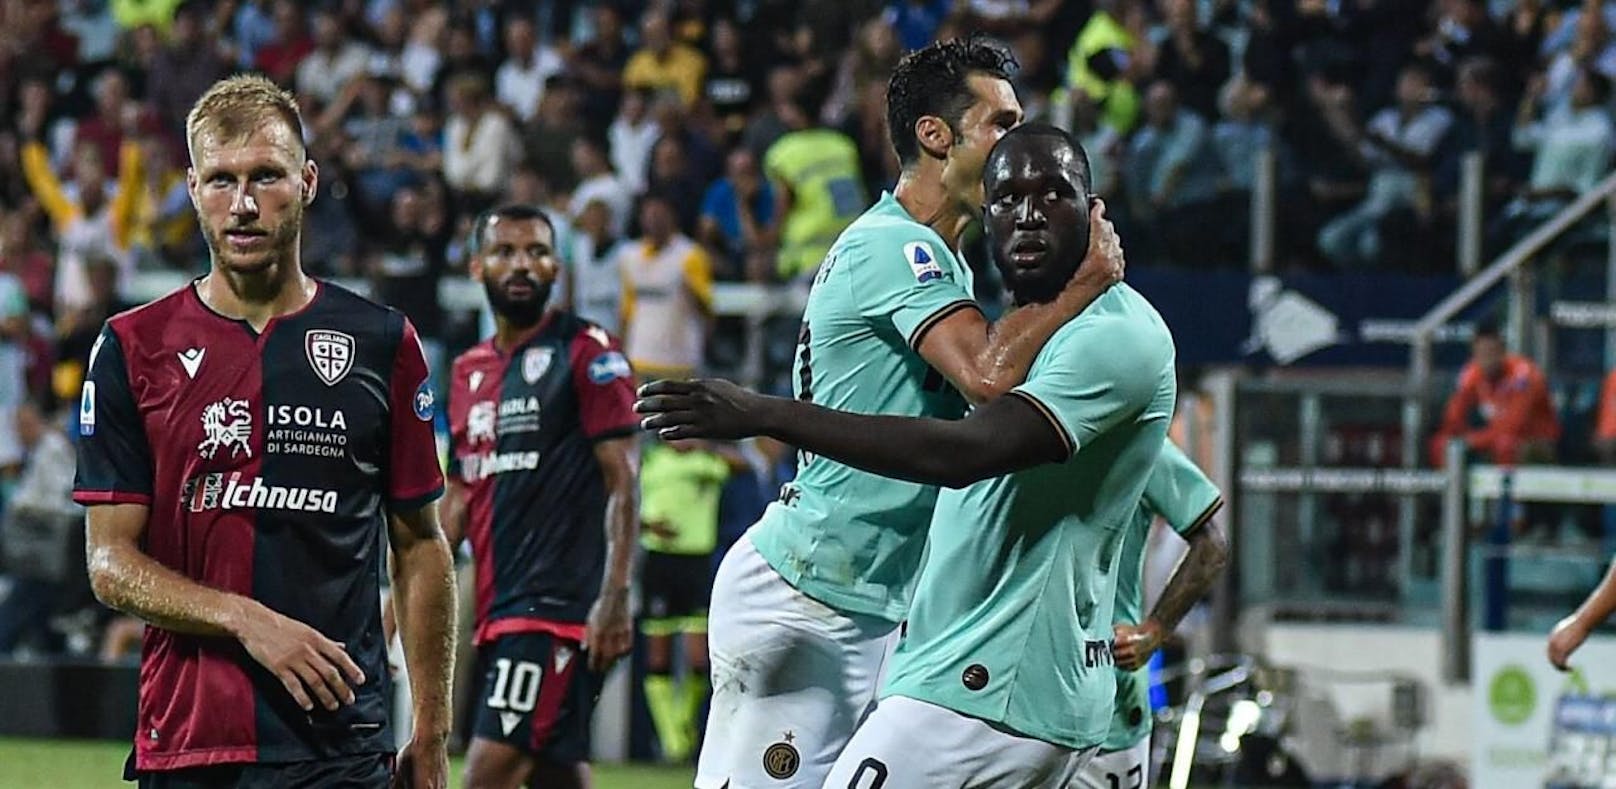 Romelu Lukaku kann sich über seinen Treffer nicht freuen. Er starrt die Cagliari-Fans an, die ihn mit Affenlauten beleidigten.